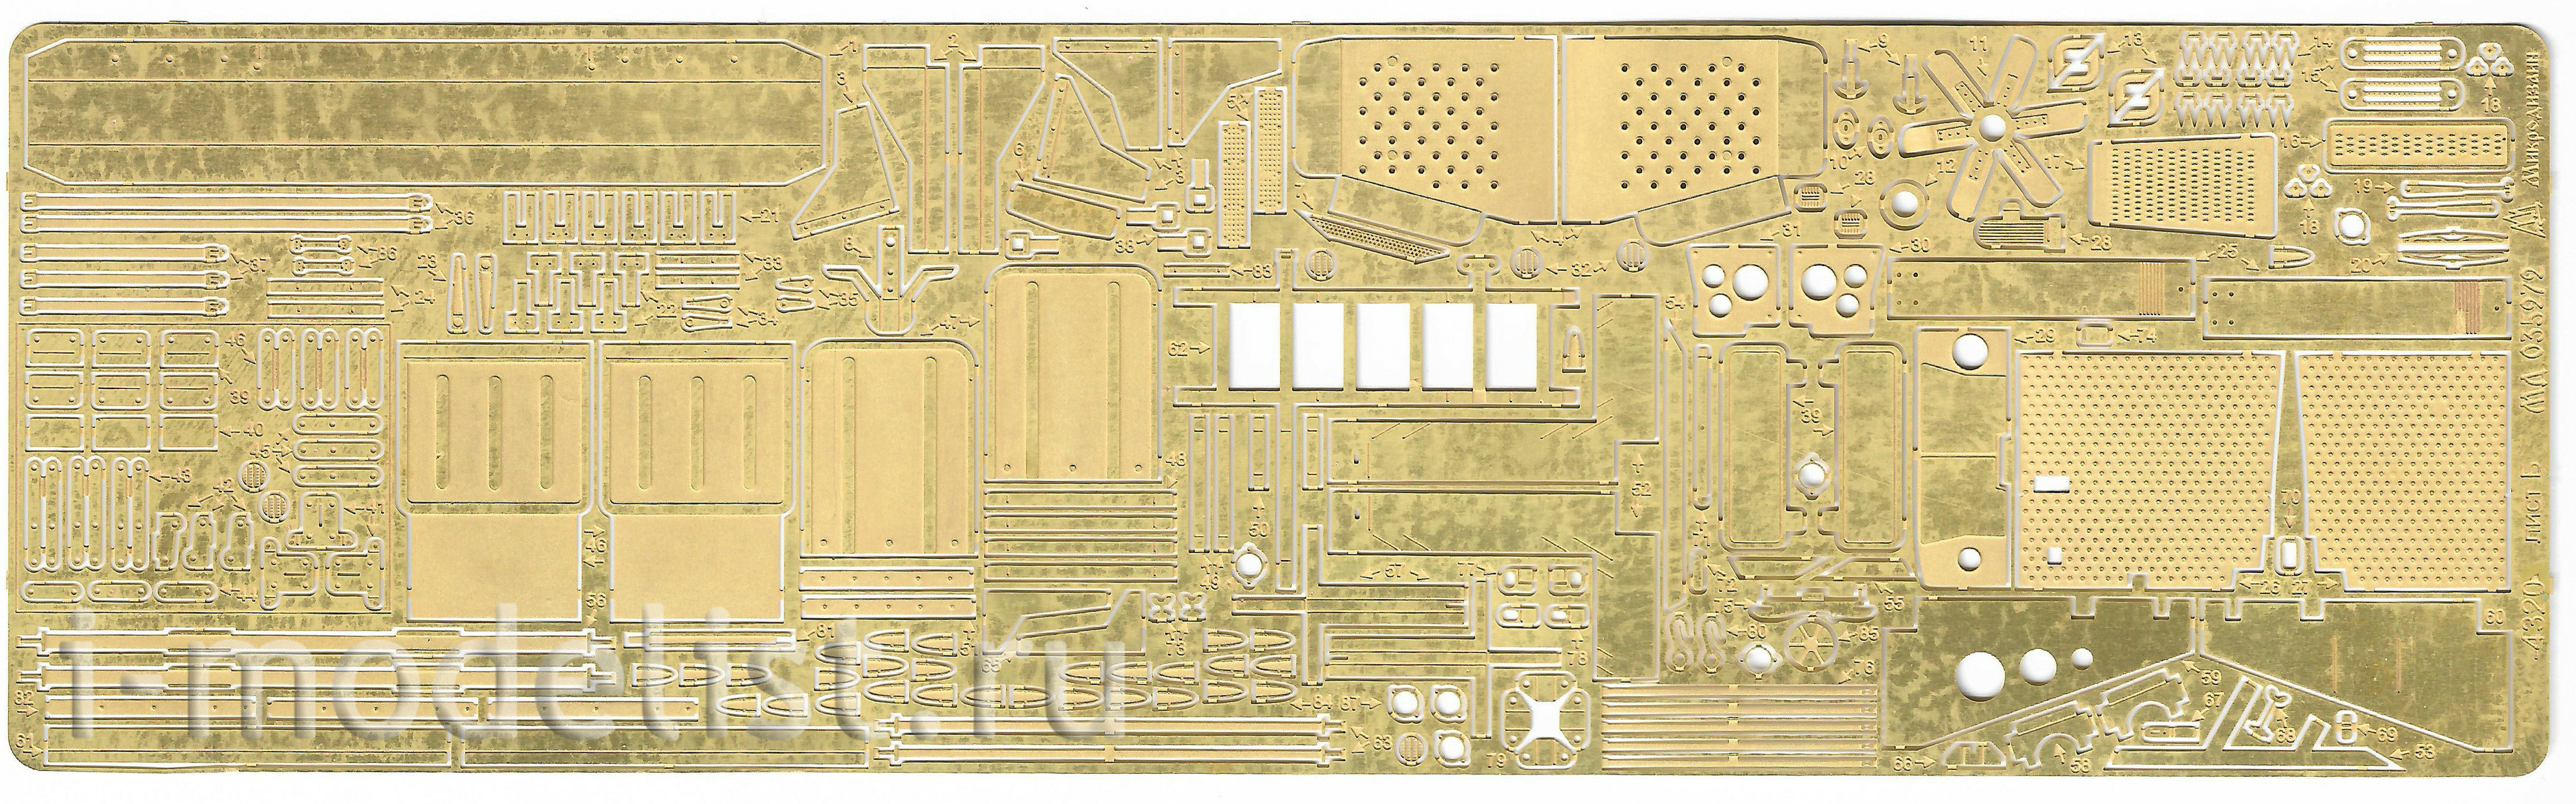 035272 Microdesign 1/35 U-4320 from Zvezda